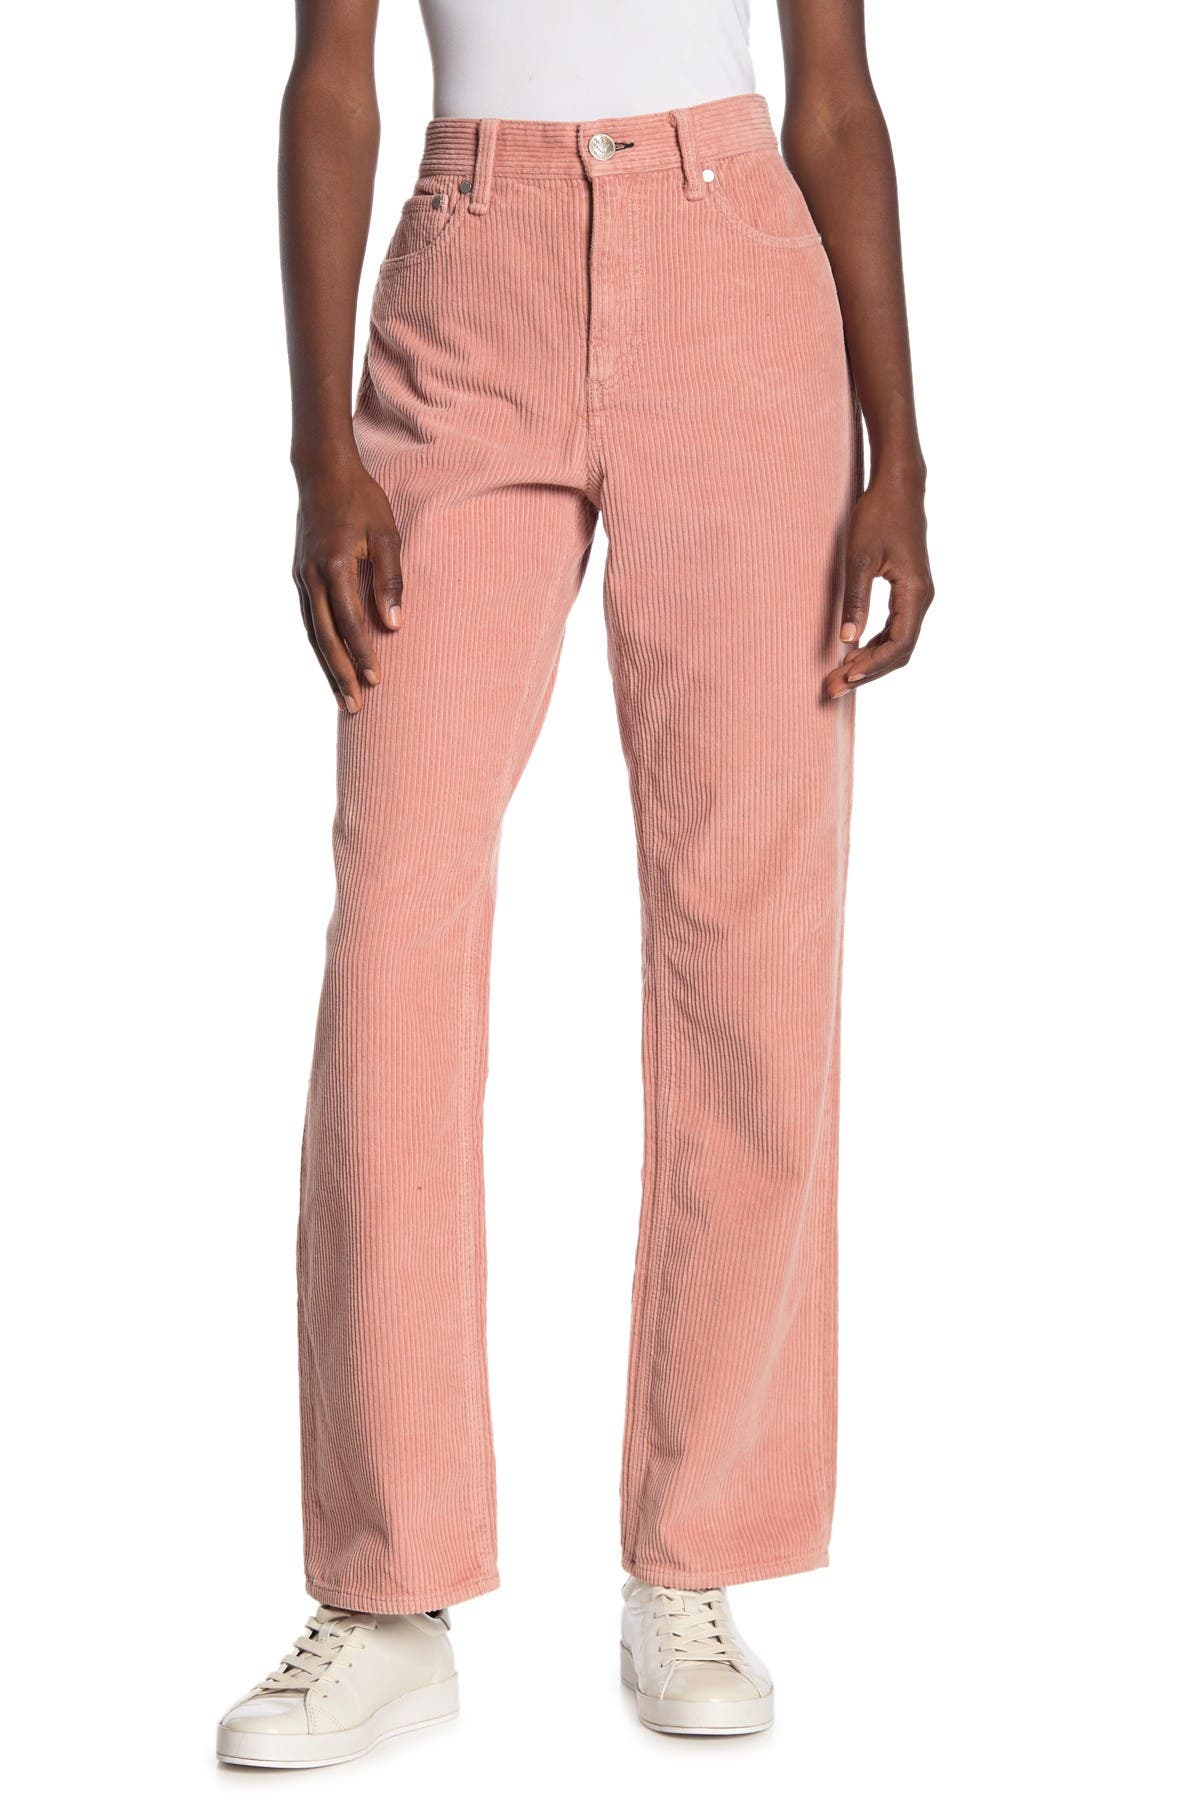 pink high waisted corduroy pants